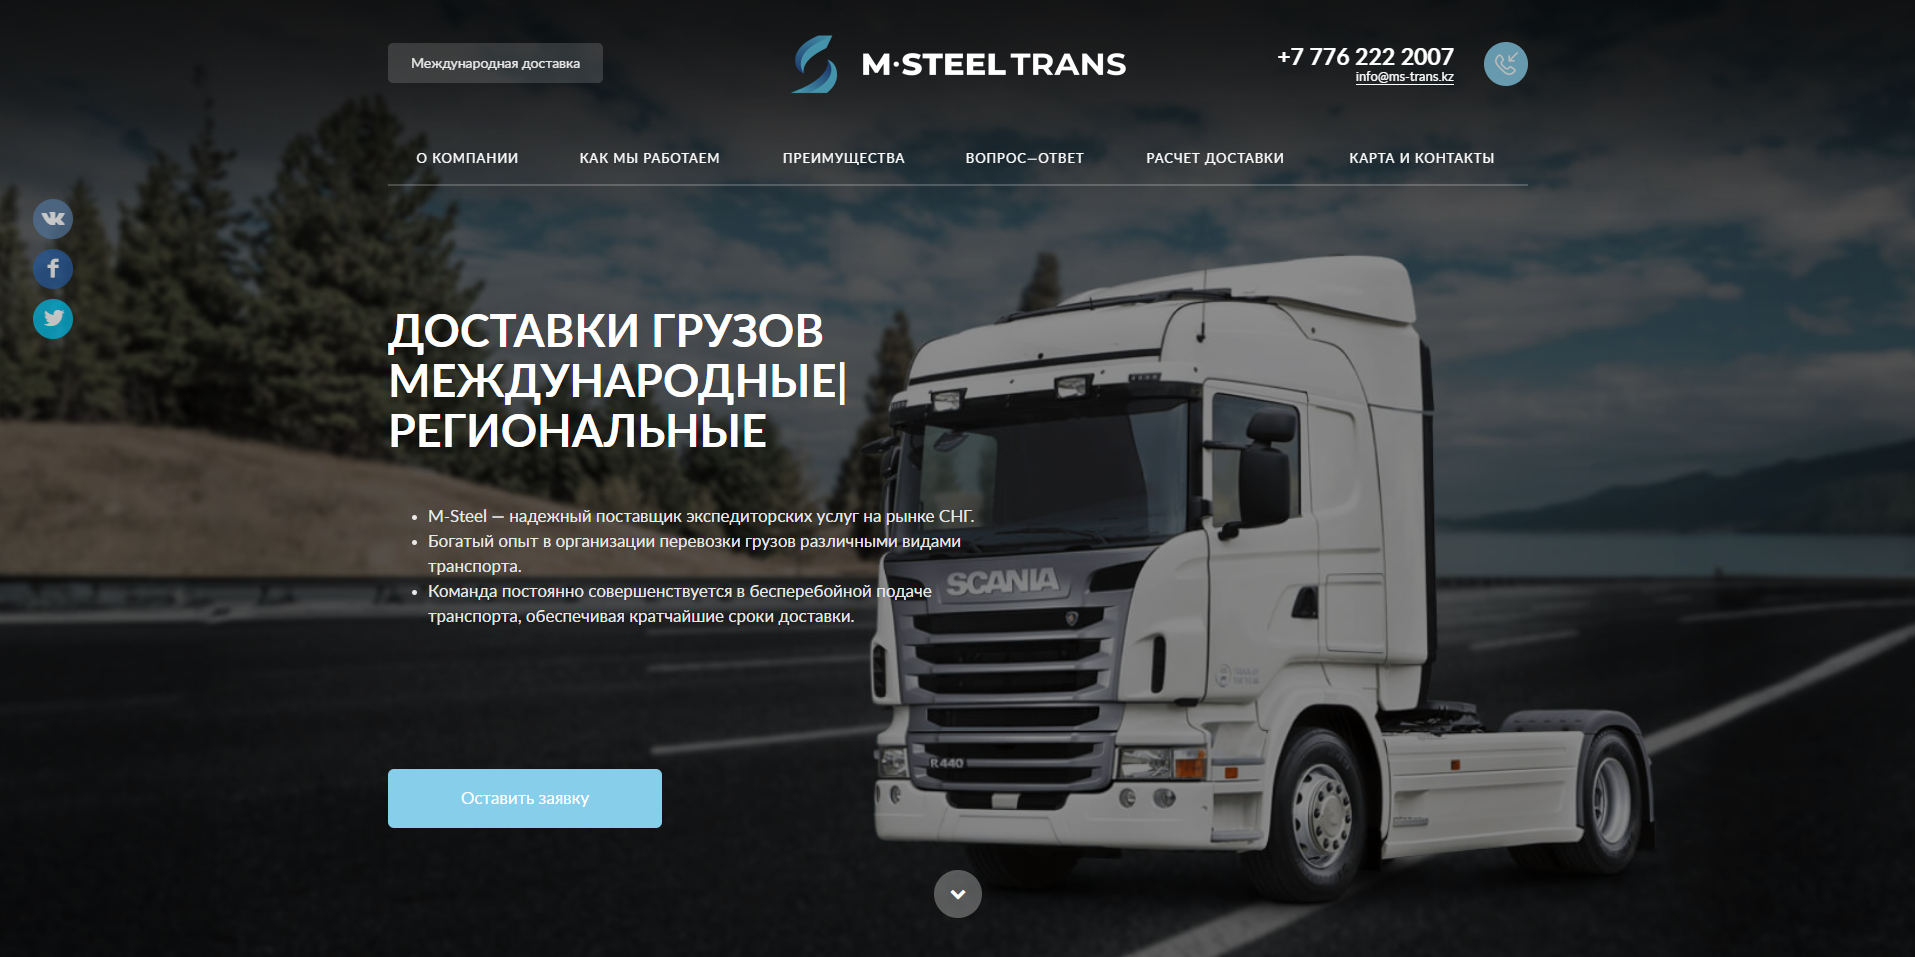 лэндинг логистической компании тоо «m-steel trans» международной доставки грузов